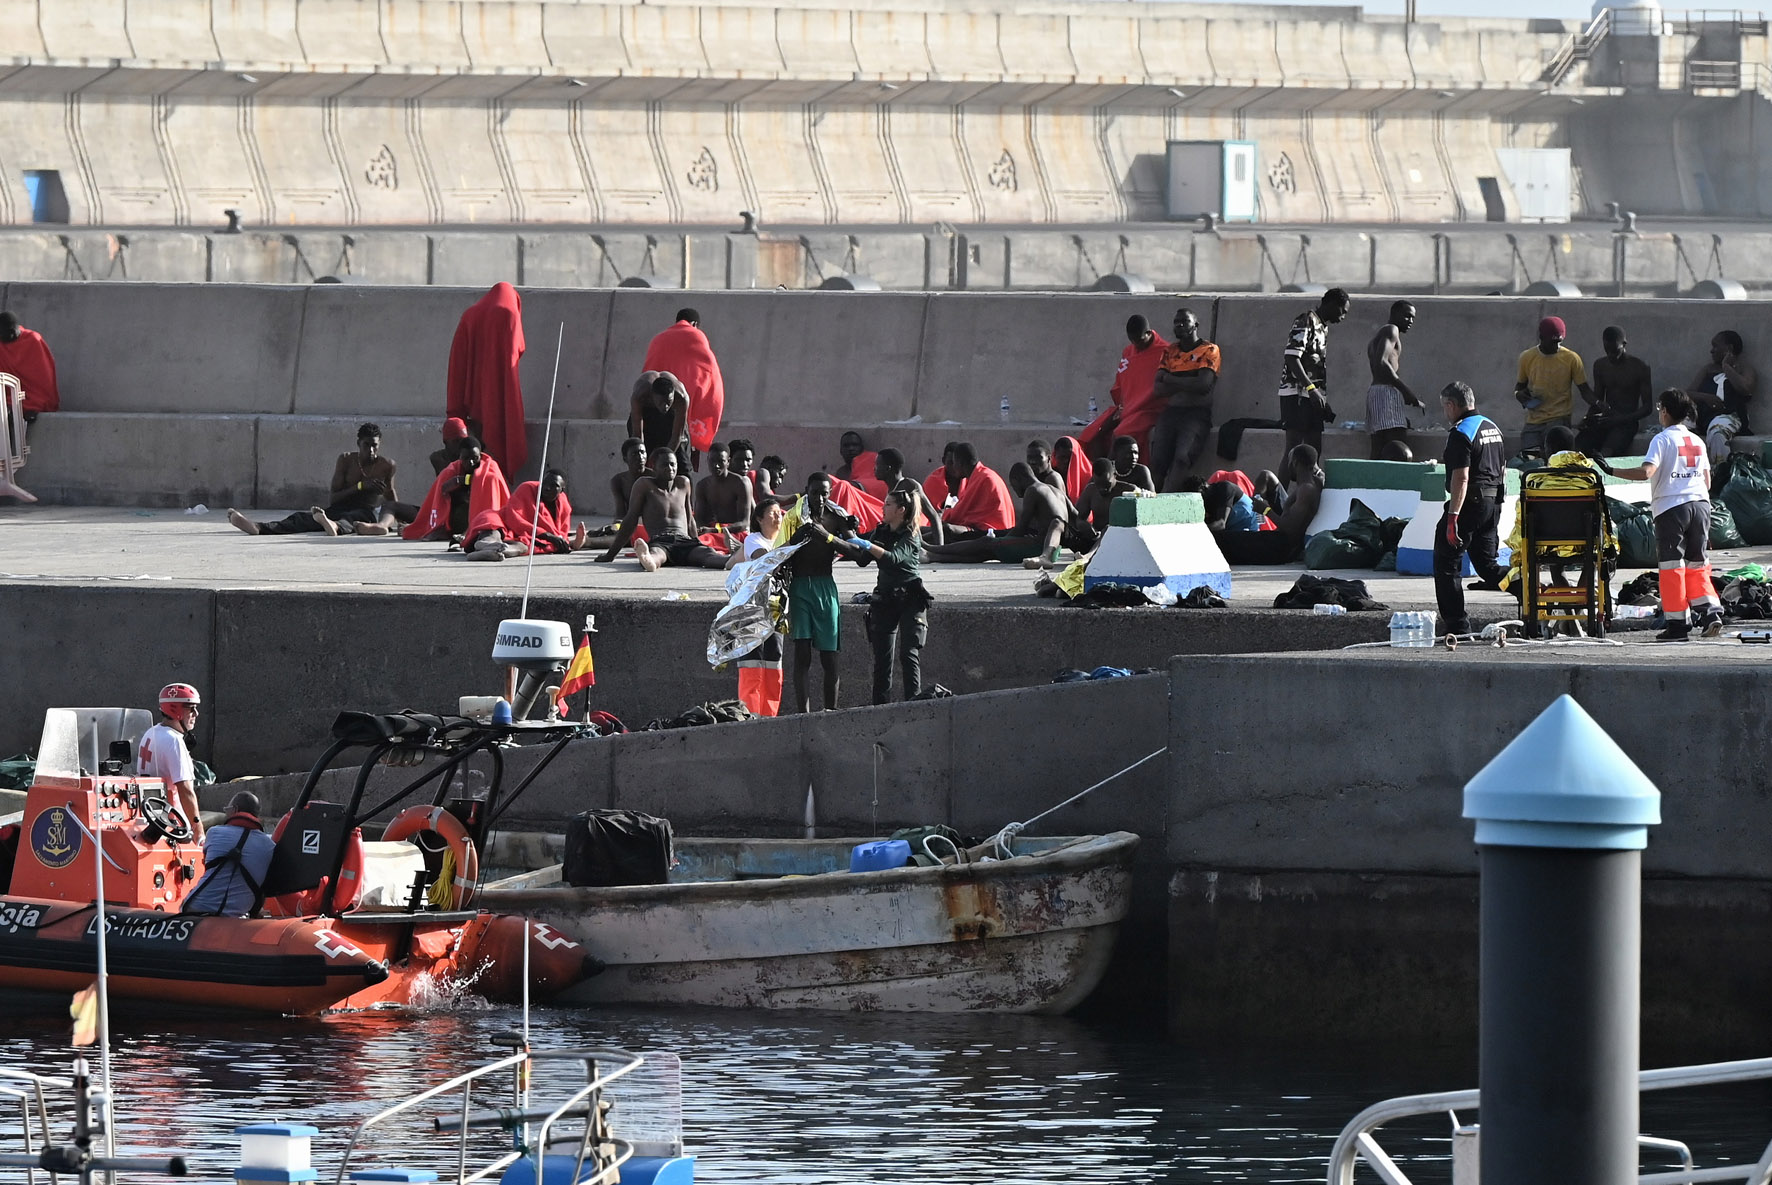 Un total de 225 inmigrantes han llegado hoy a El Hierro a bordo de 2 embarcaciones, entre ellos 3 fallecidos